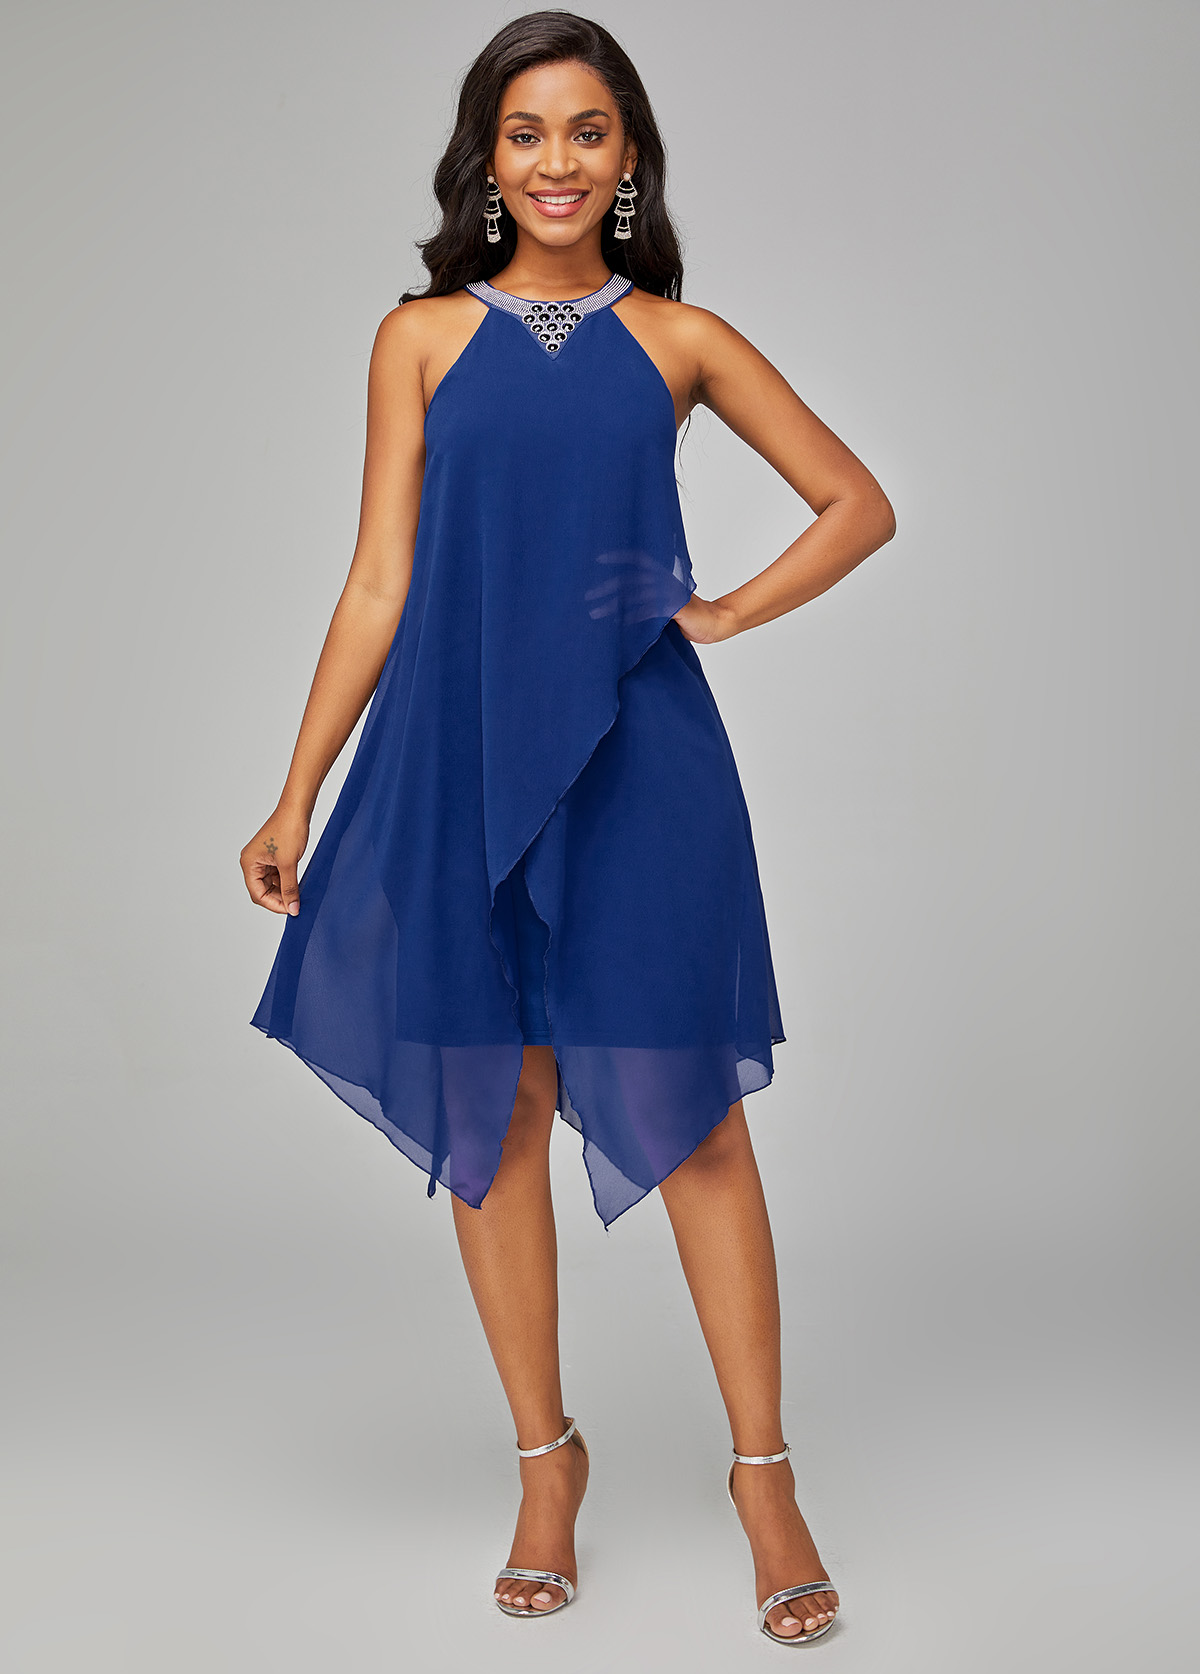 Blue Chiffon Overlay Embellished Neck Dress